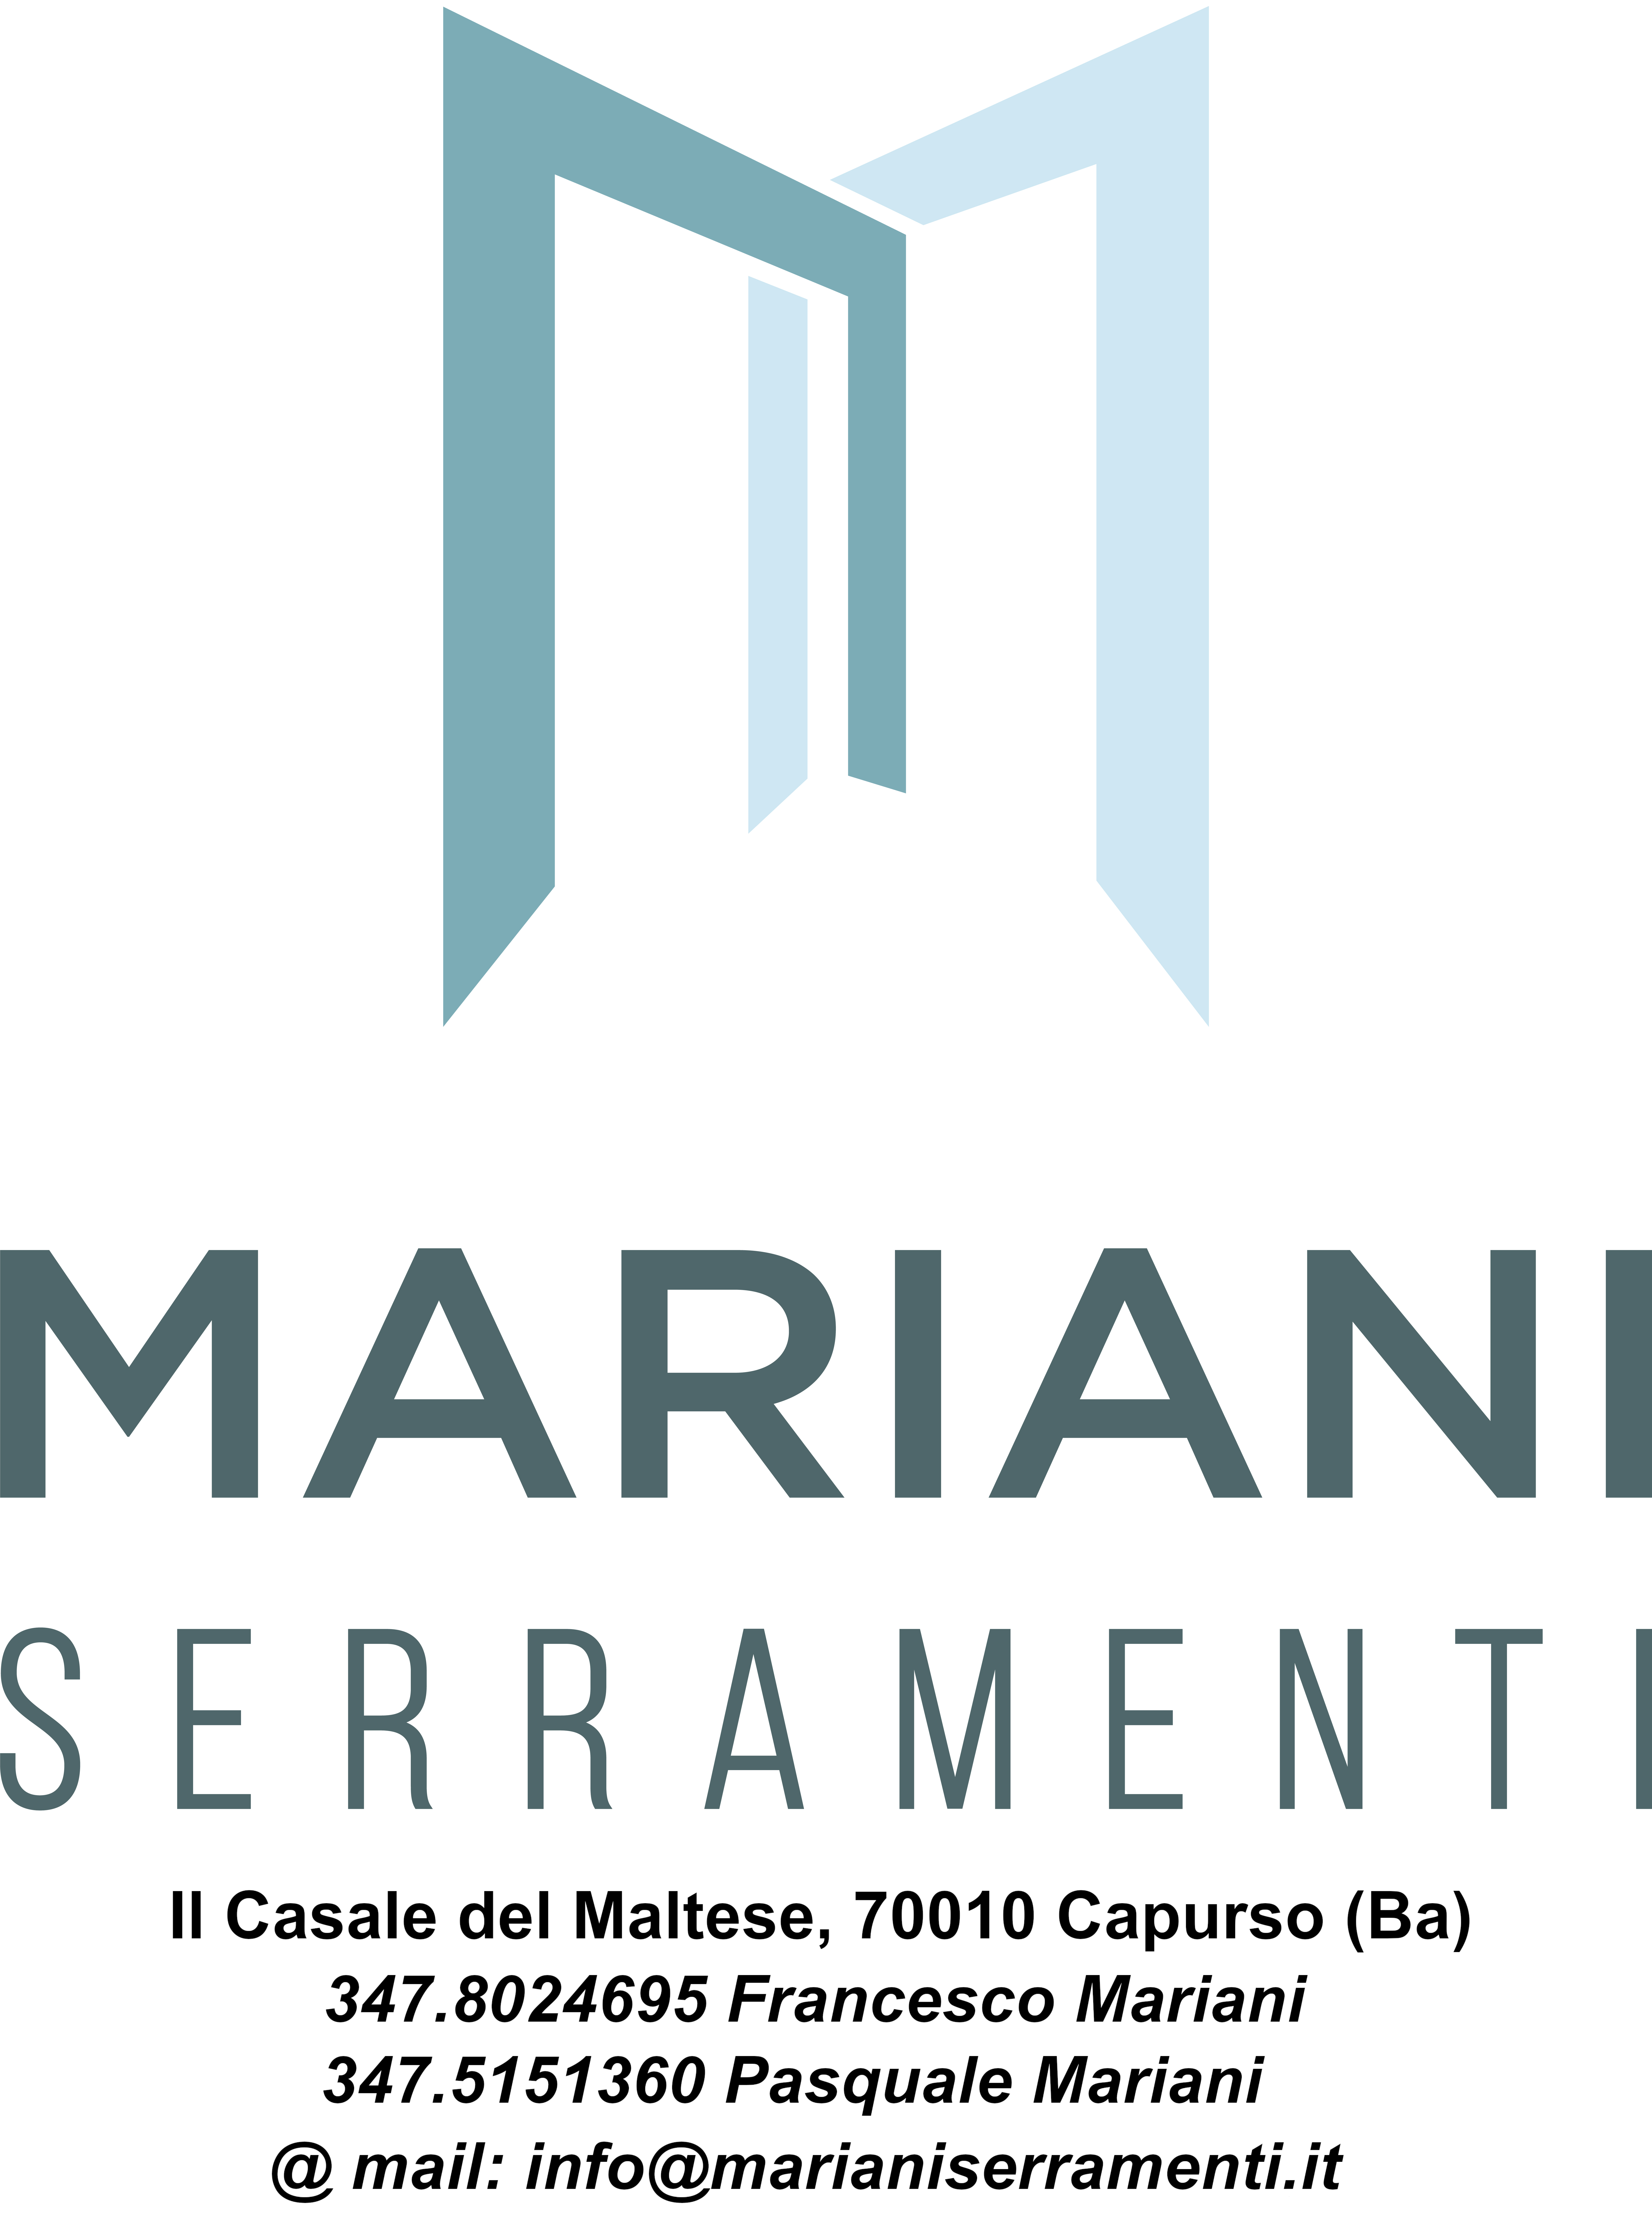 Mariani Serramenti